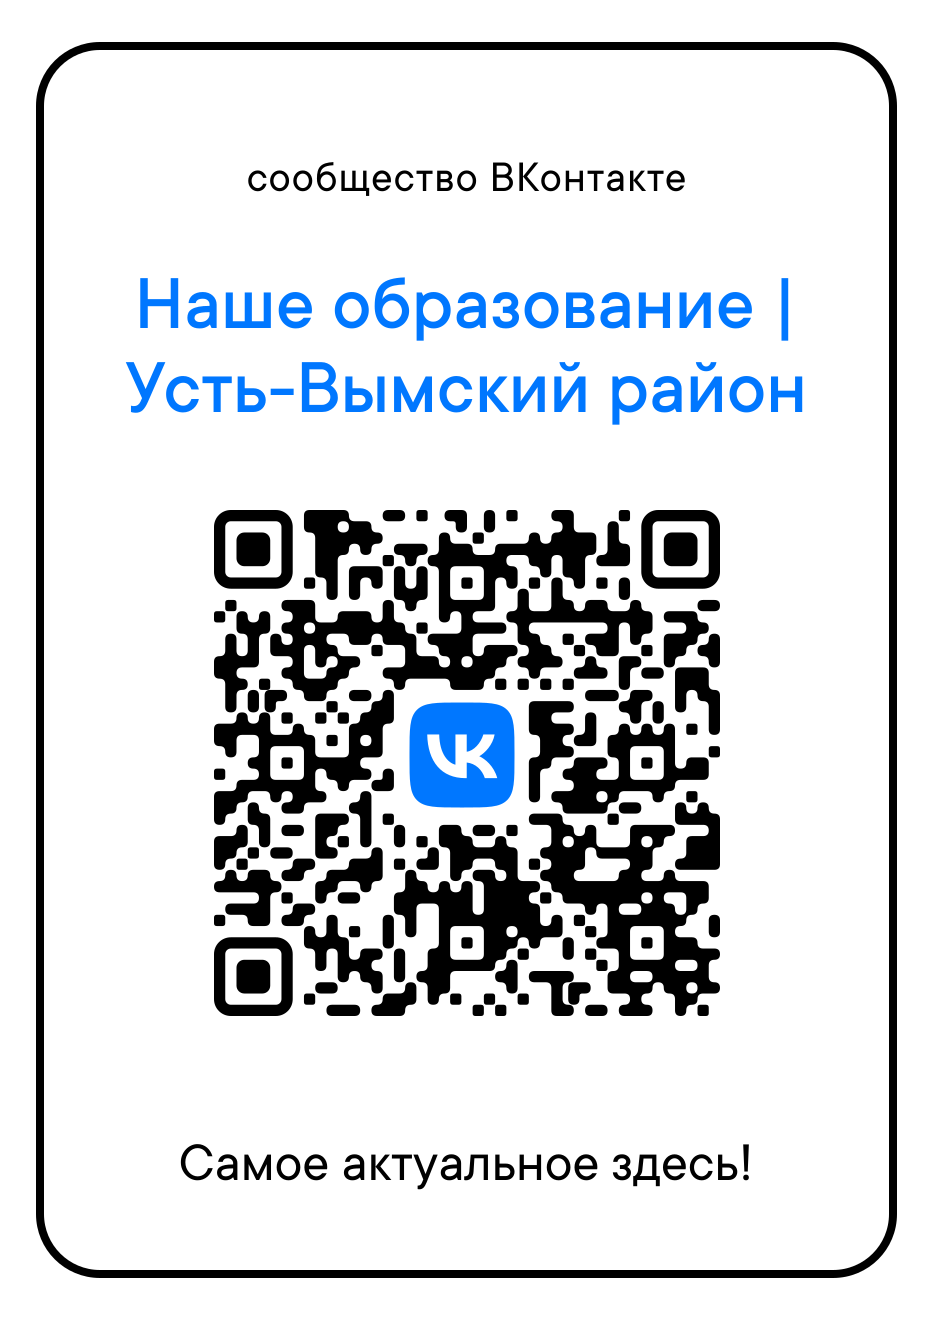 Куар-код официальной группы Вконтакте Управления образования